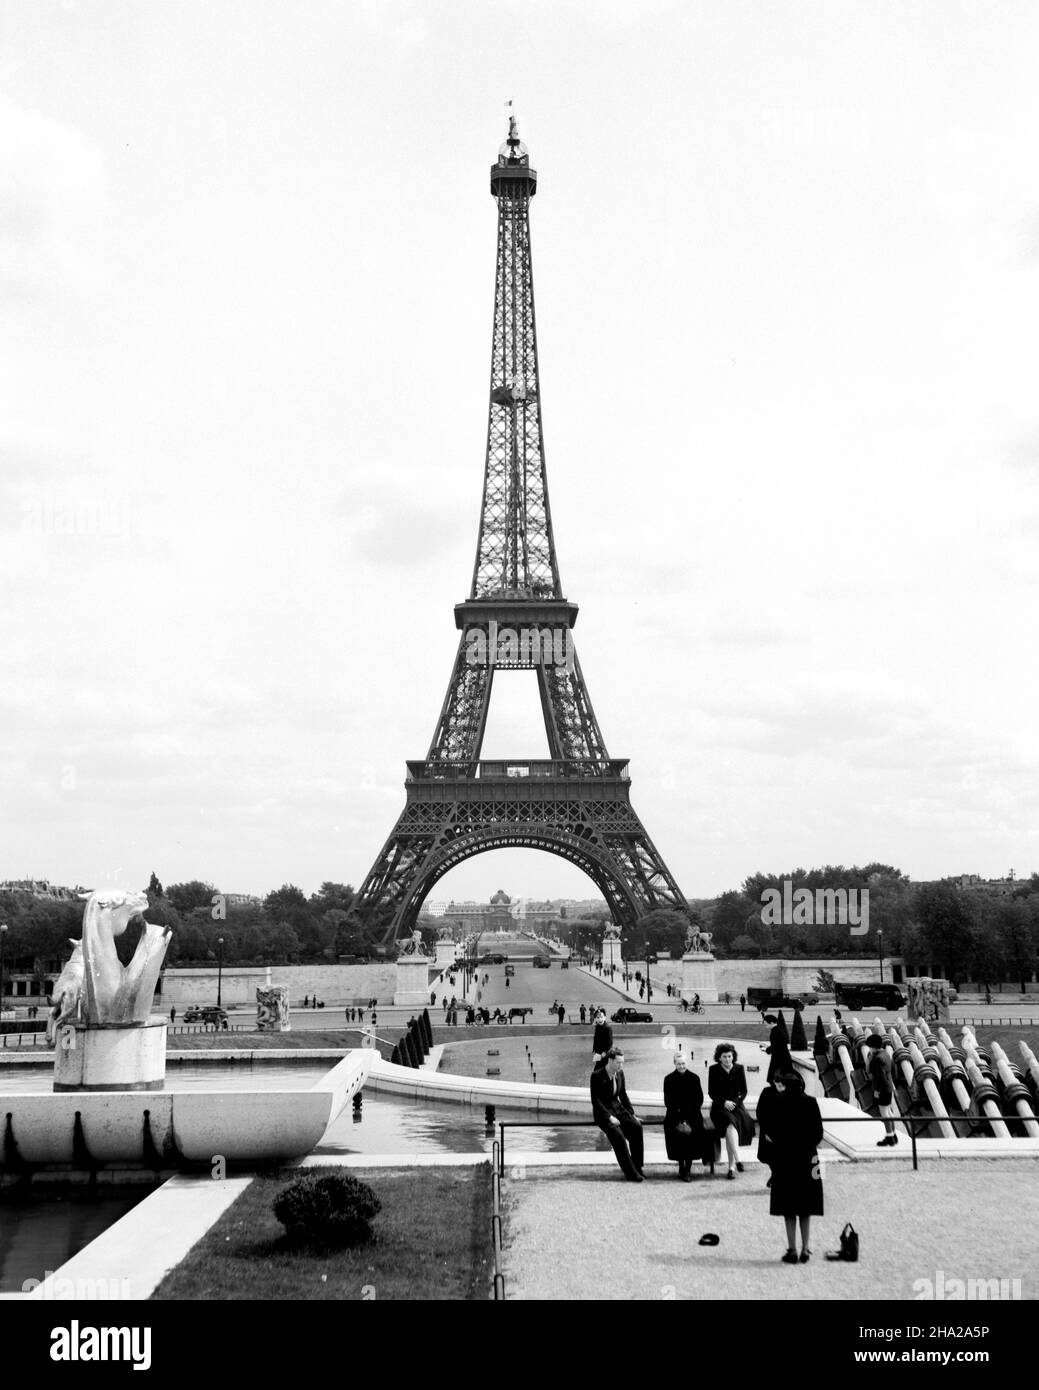 Paris Tour Eiffel 1945 depuis les jardins du Trocadéro.Vue en hauteur de la tour prise du dessus de la fontaine des Jardins du Trocadéro (Jardins du Trocadéro) la position de la caméra est légèrement au-dessus et peut-être à 20 pieds d'une famille de huit.Une femme en robe semble arranger une photo d'une partie de la famille avec la tour en arrière-plan.Le groupe familial au premier plan semble avoir de 5 à 80 ans.Au-dessous d'eux, il y a beaucoup de gens à pied à la base de la fontaine et se promène sur le pont d'lena. Banque D'Images